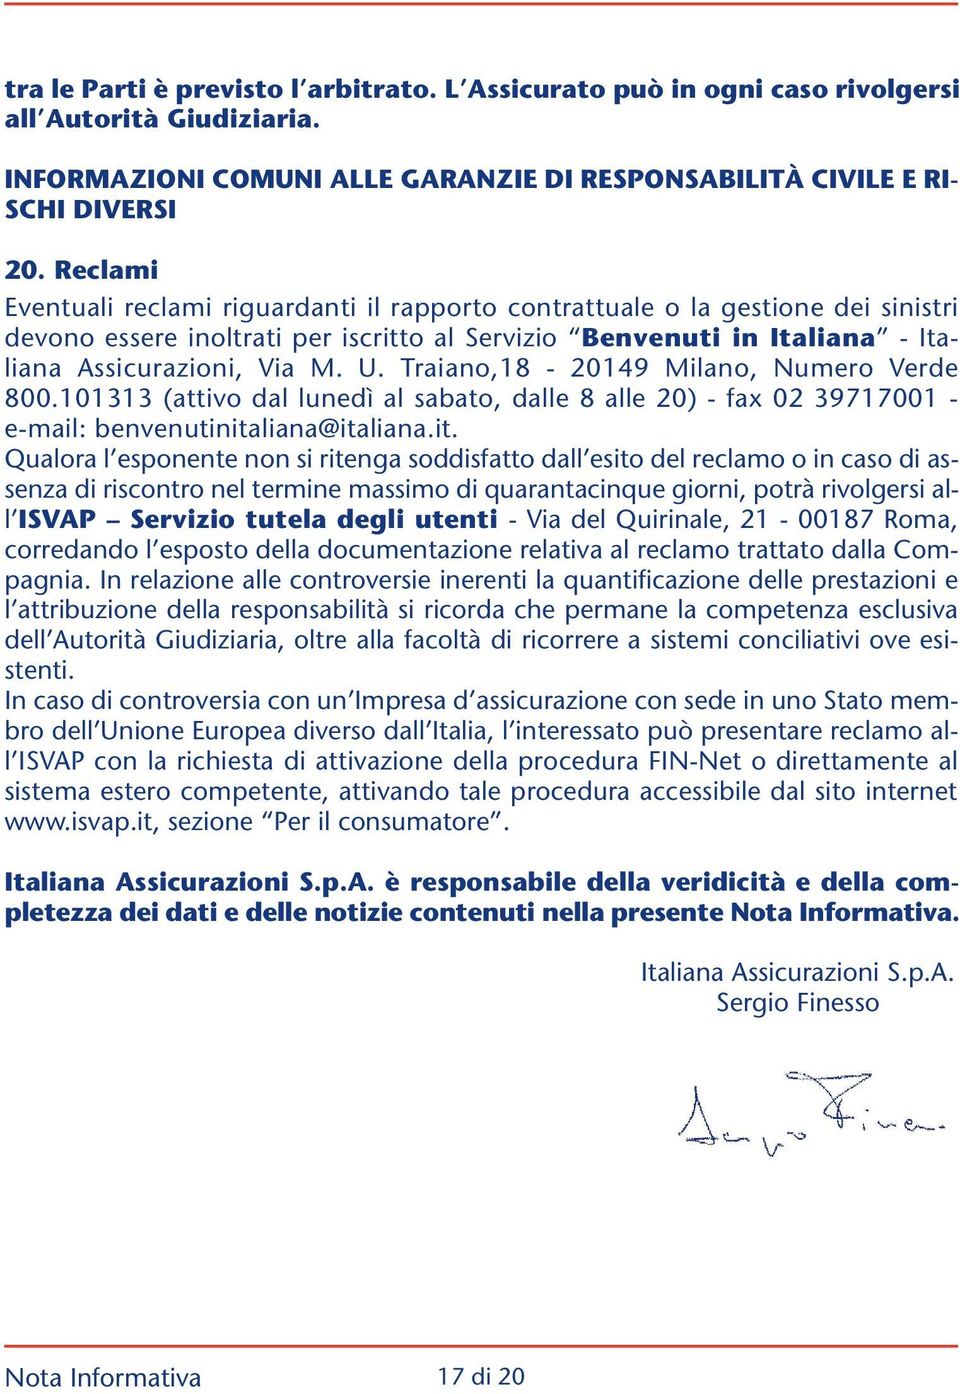 Traiano,18-20149 Milano, Numero Verde 800.101313 (attivo dal lunedì al sabato, dalle 8 alle 20) - fax 02 39717001 - e-mail: benvenutinita